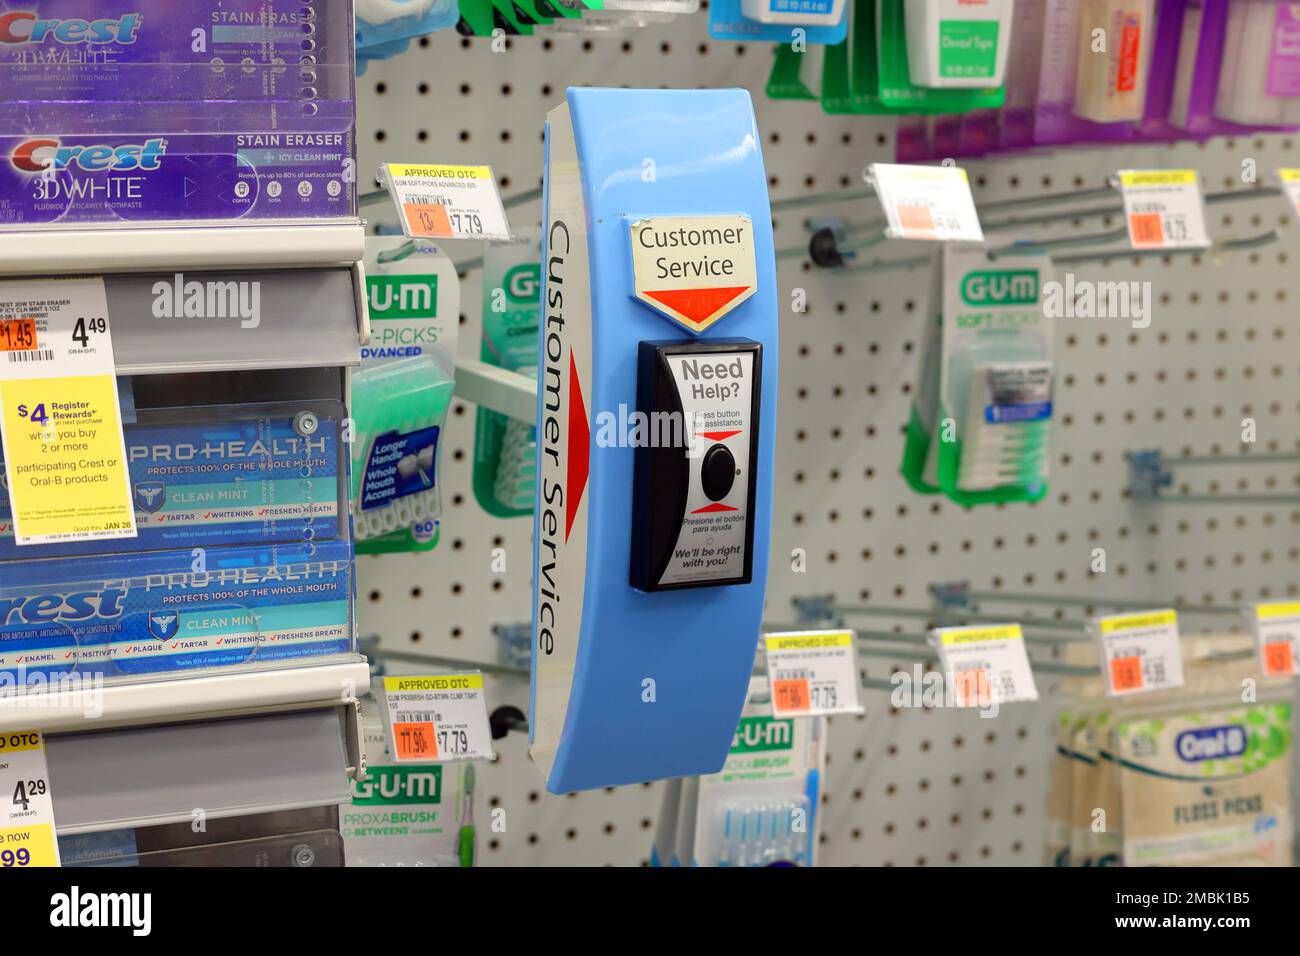 Un pulsante di chiamata al servizio clienti wireless presso una farmacia Duane Reade. Il pulsante avvisa i lavoratori di un cliente che richiede assistenza per ottenere articoli da lo Foto Stock